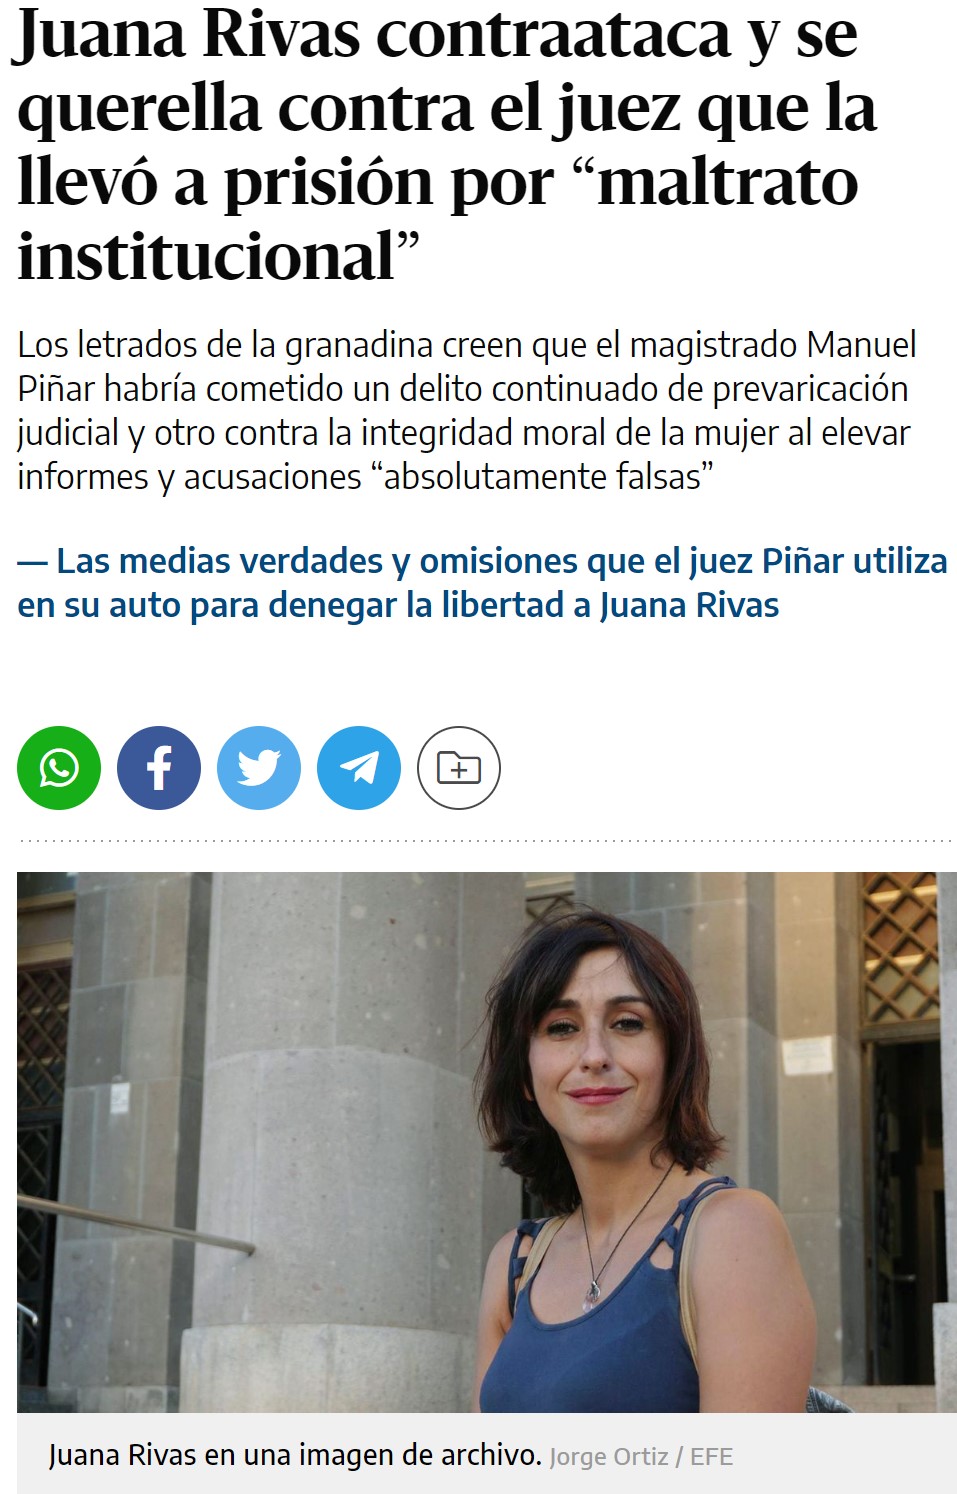 El mundo al revés: con todas las pruebas en su contra, Juana Rivas decide querellarse contra el juez que la llevó a prisión